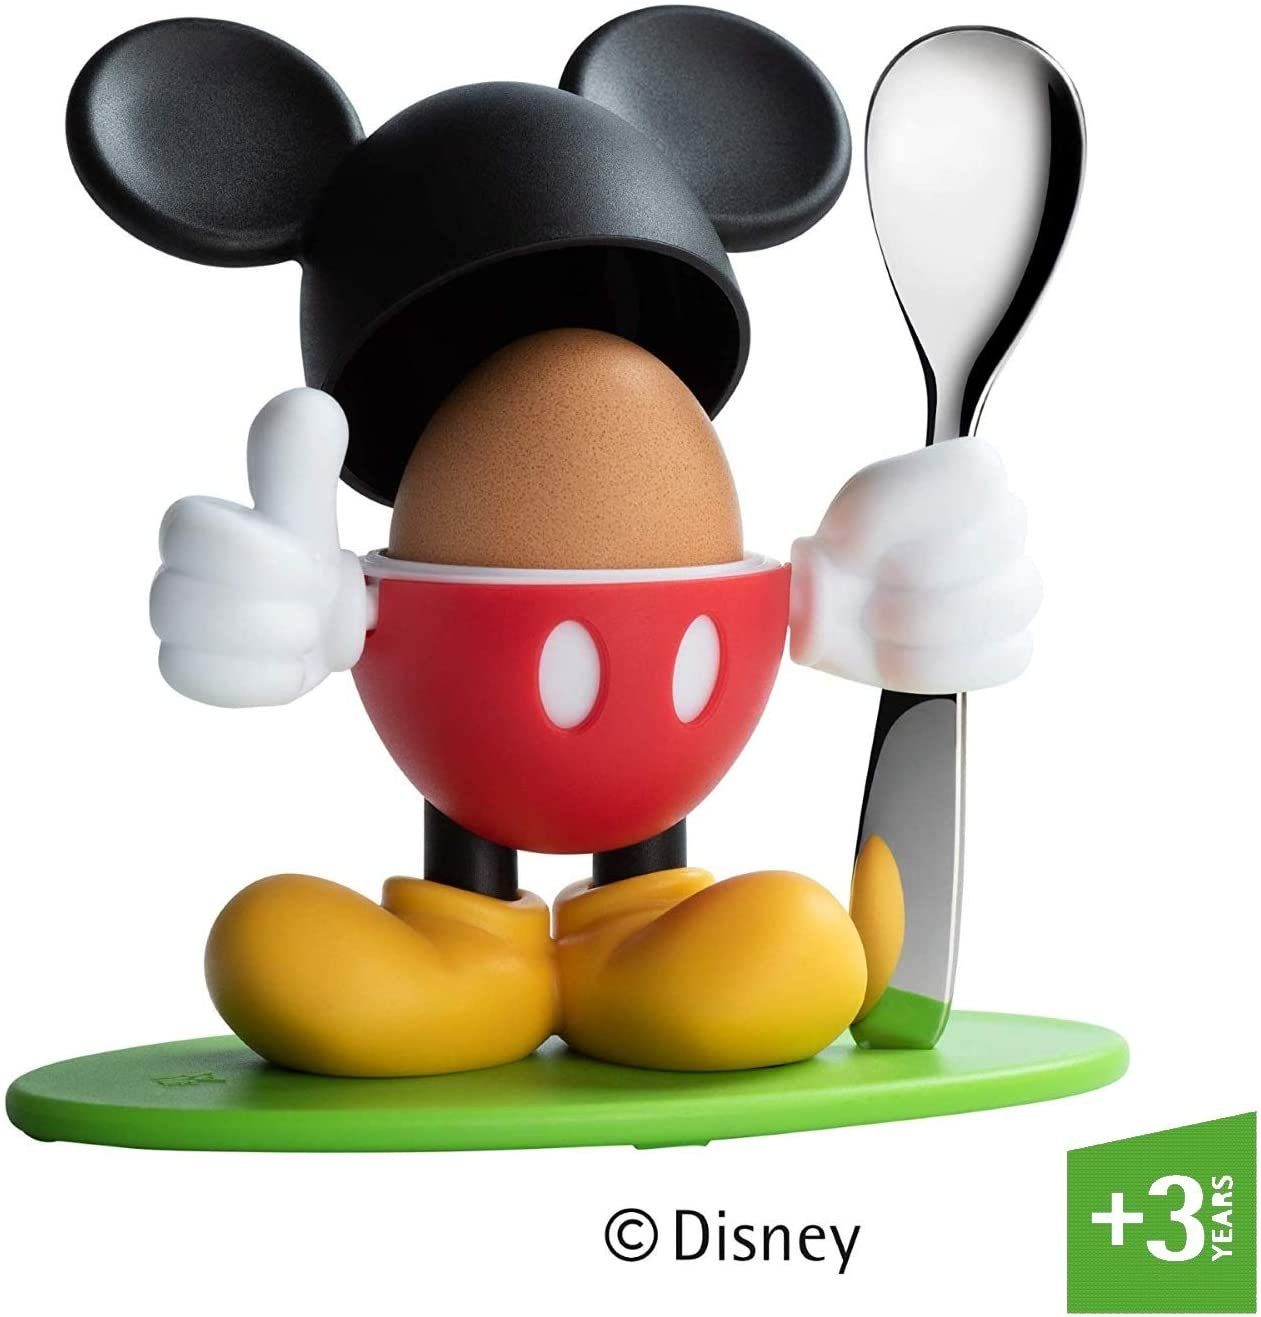 WMF Eierbecher Mickey Mouse, (1x Micky Maus Eierbecher mit Kappe (Höhe 14 cm, Ø 5,4 cm), 1x Eierlöffel, 2-tlg., 1x Micky Maus Eierbecher mit Kappe, 1x Eierlöffel)